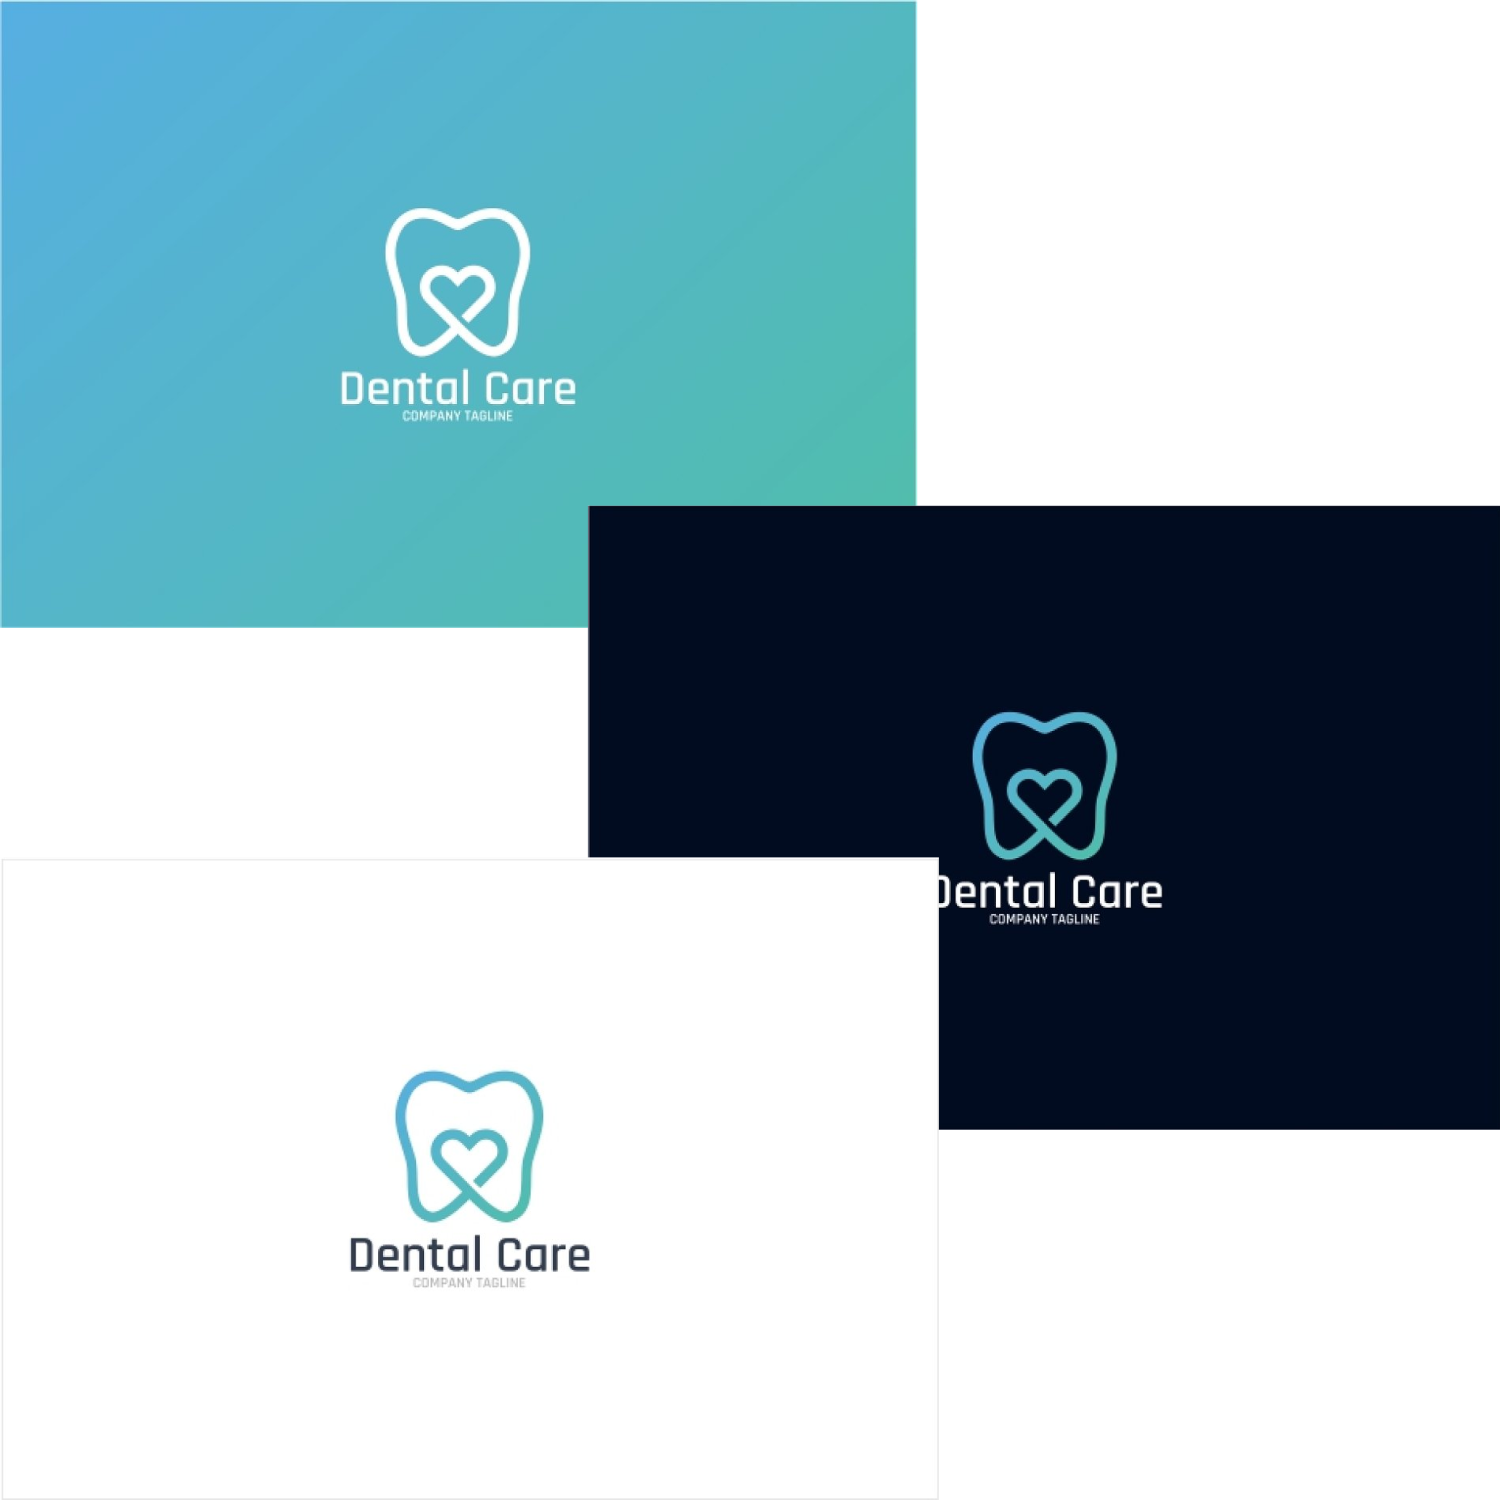 Dental love care logo.